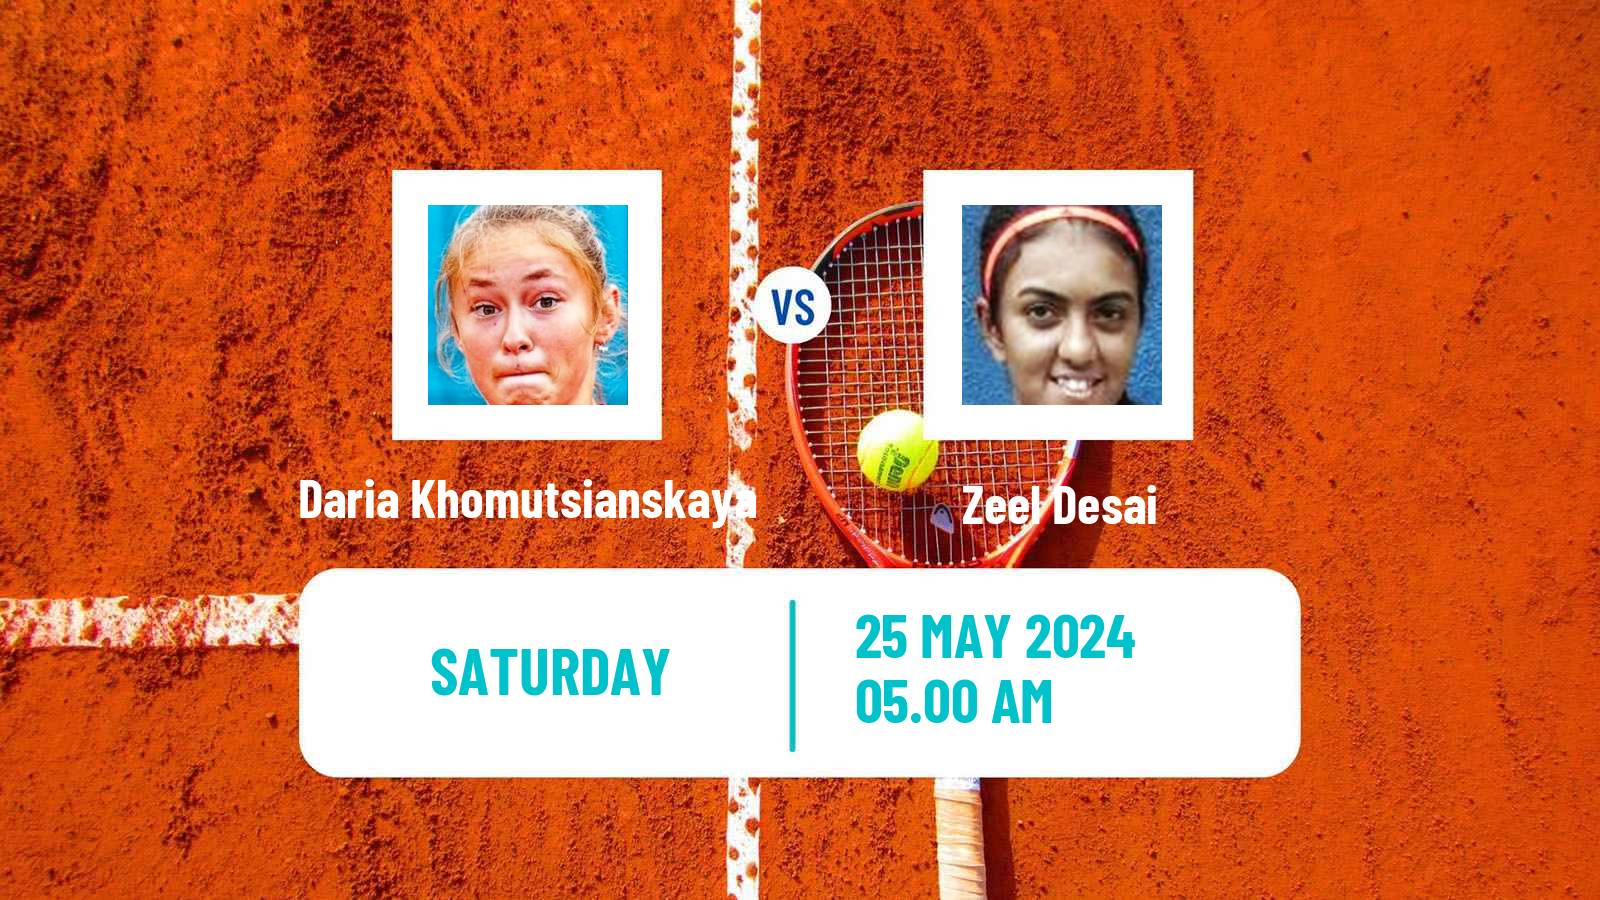 Tennis ITF W15 Monastir 19 Women Daria Khomutsianskaya - Zeel Desai